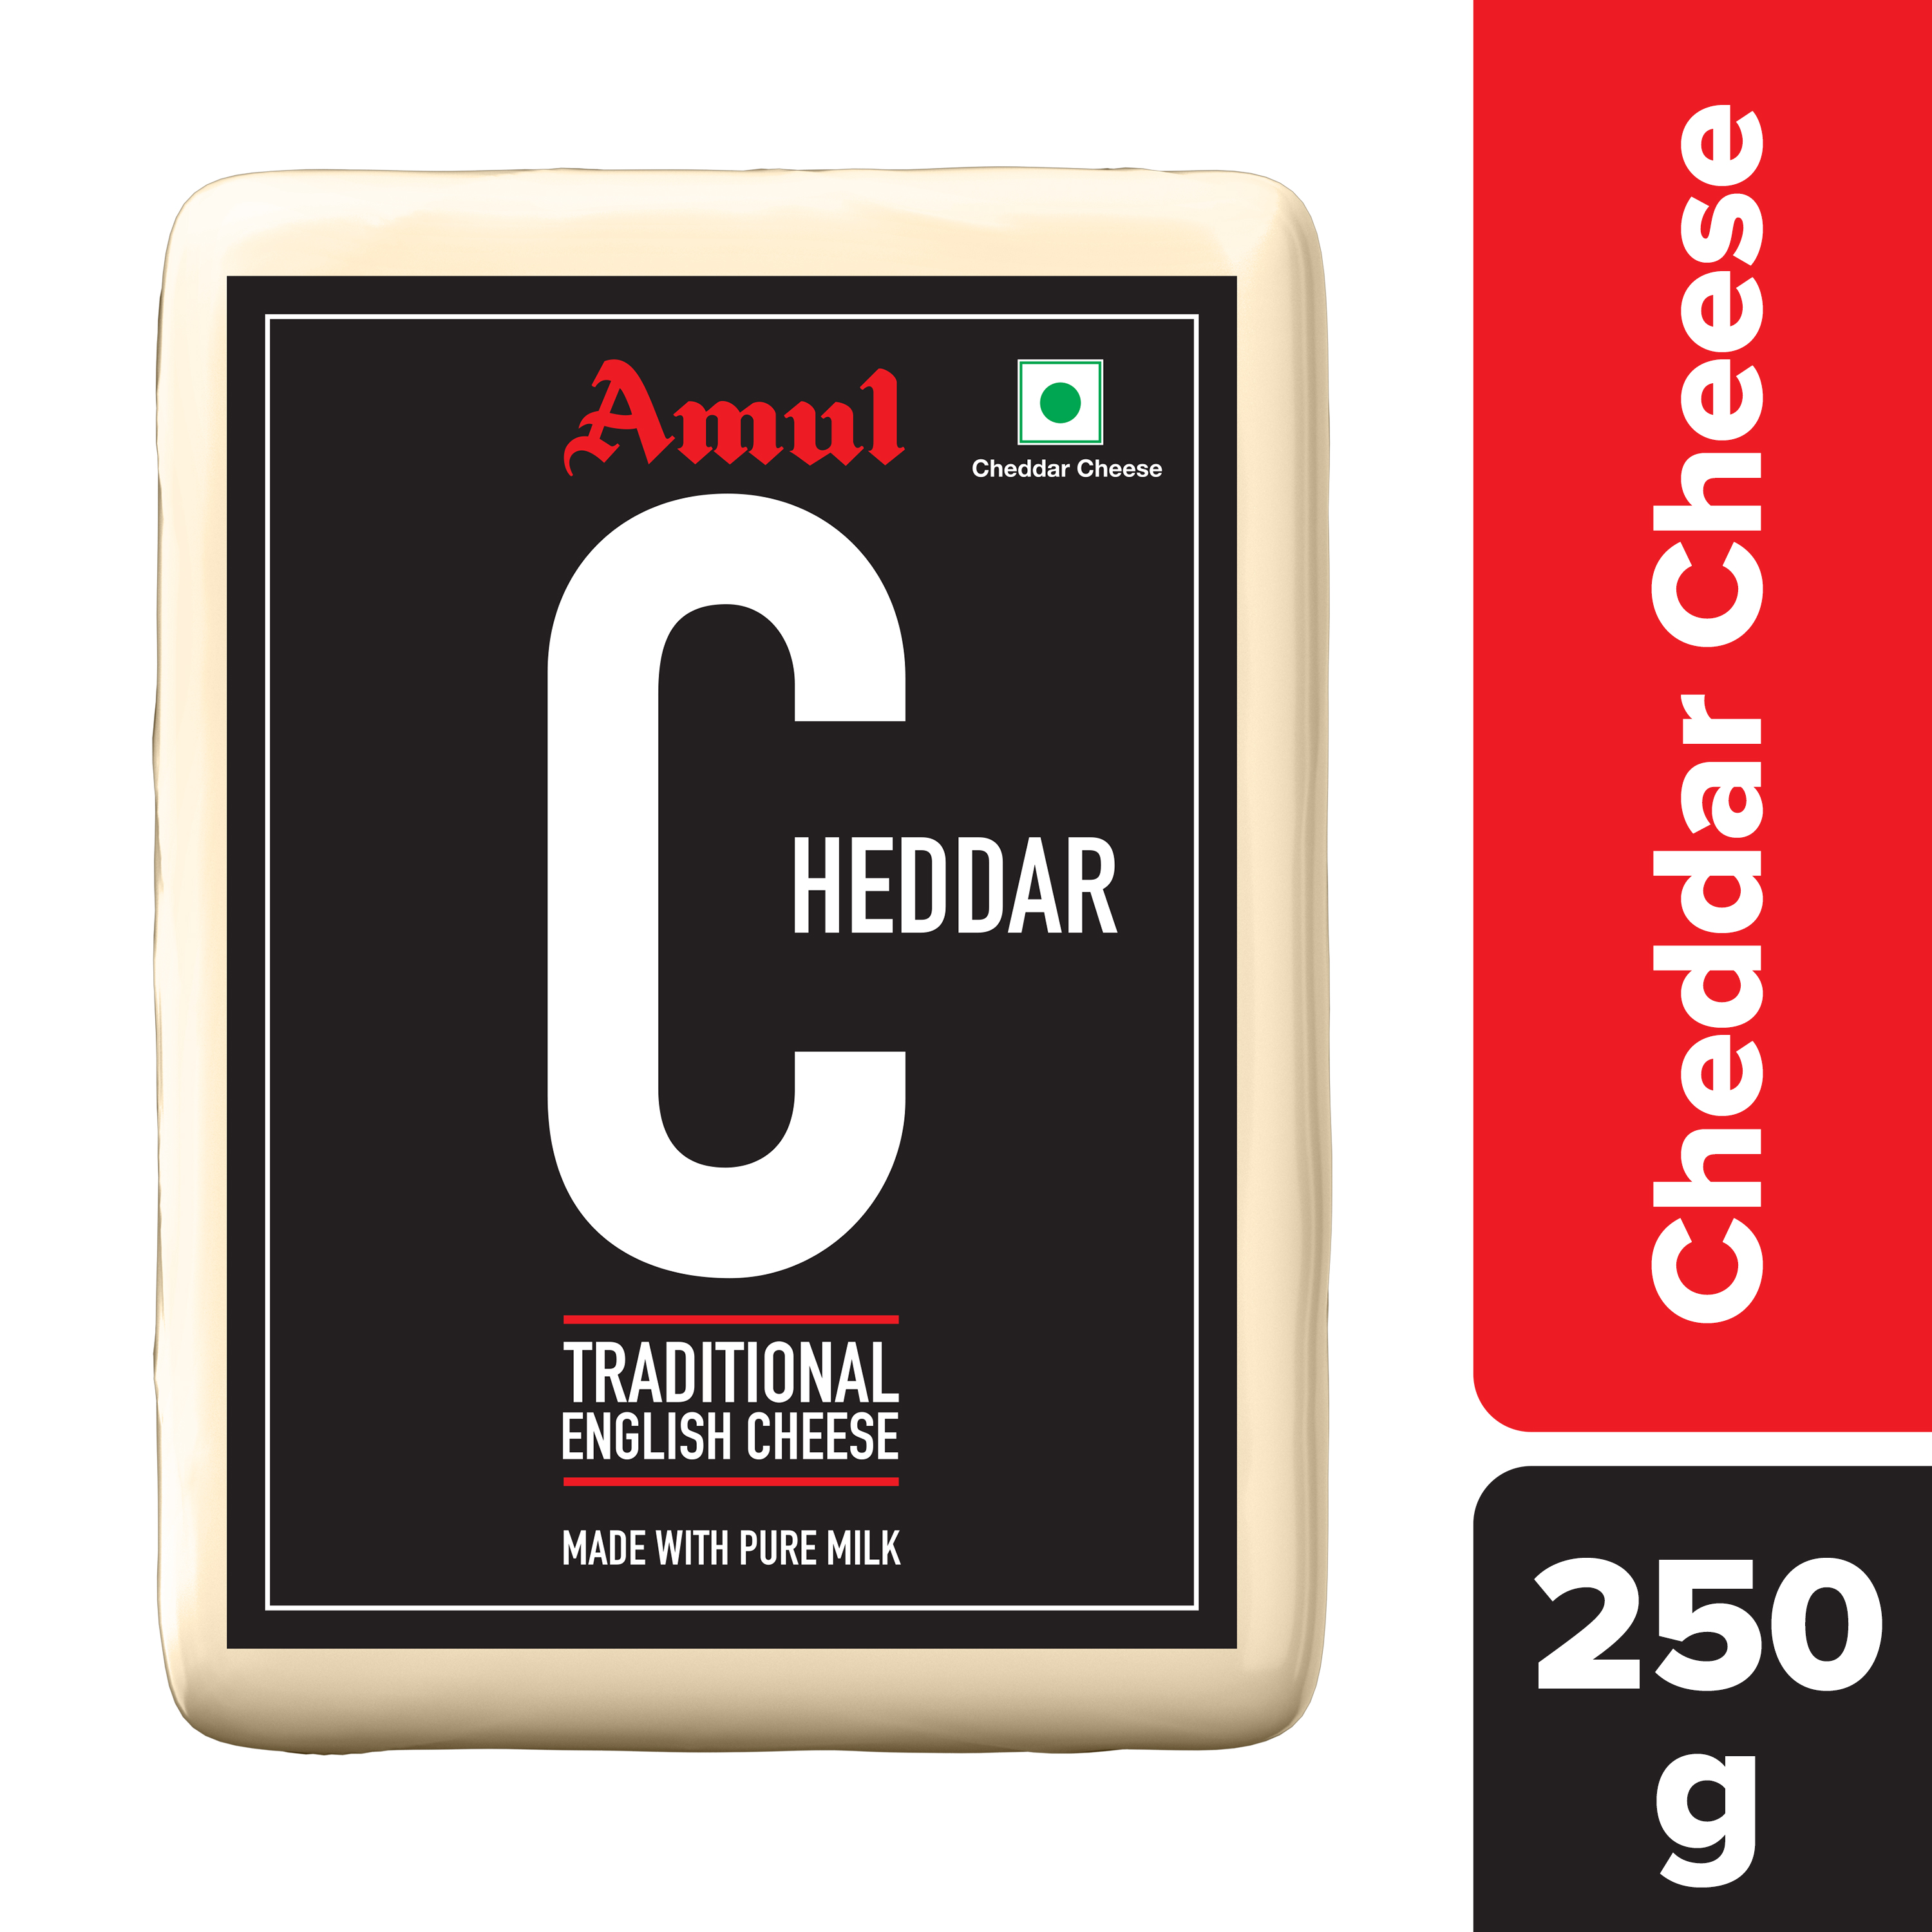 Amul Cheddar Cheese